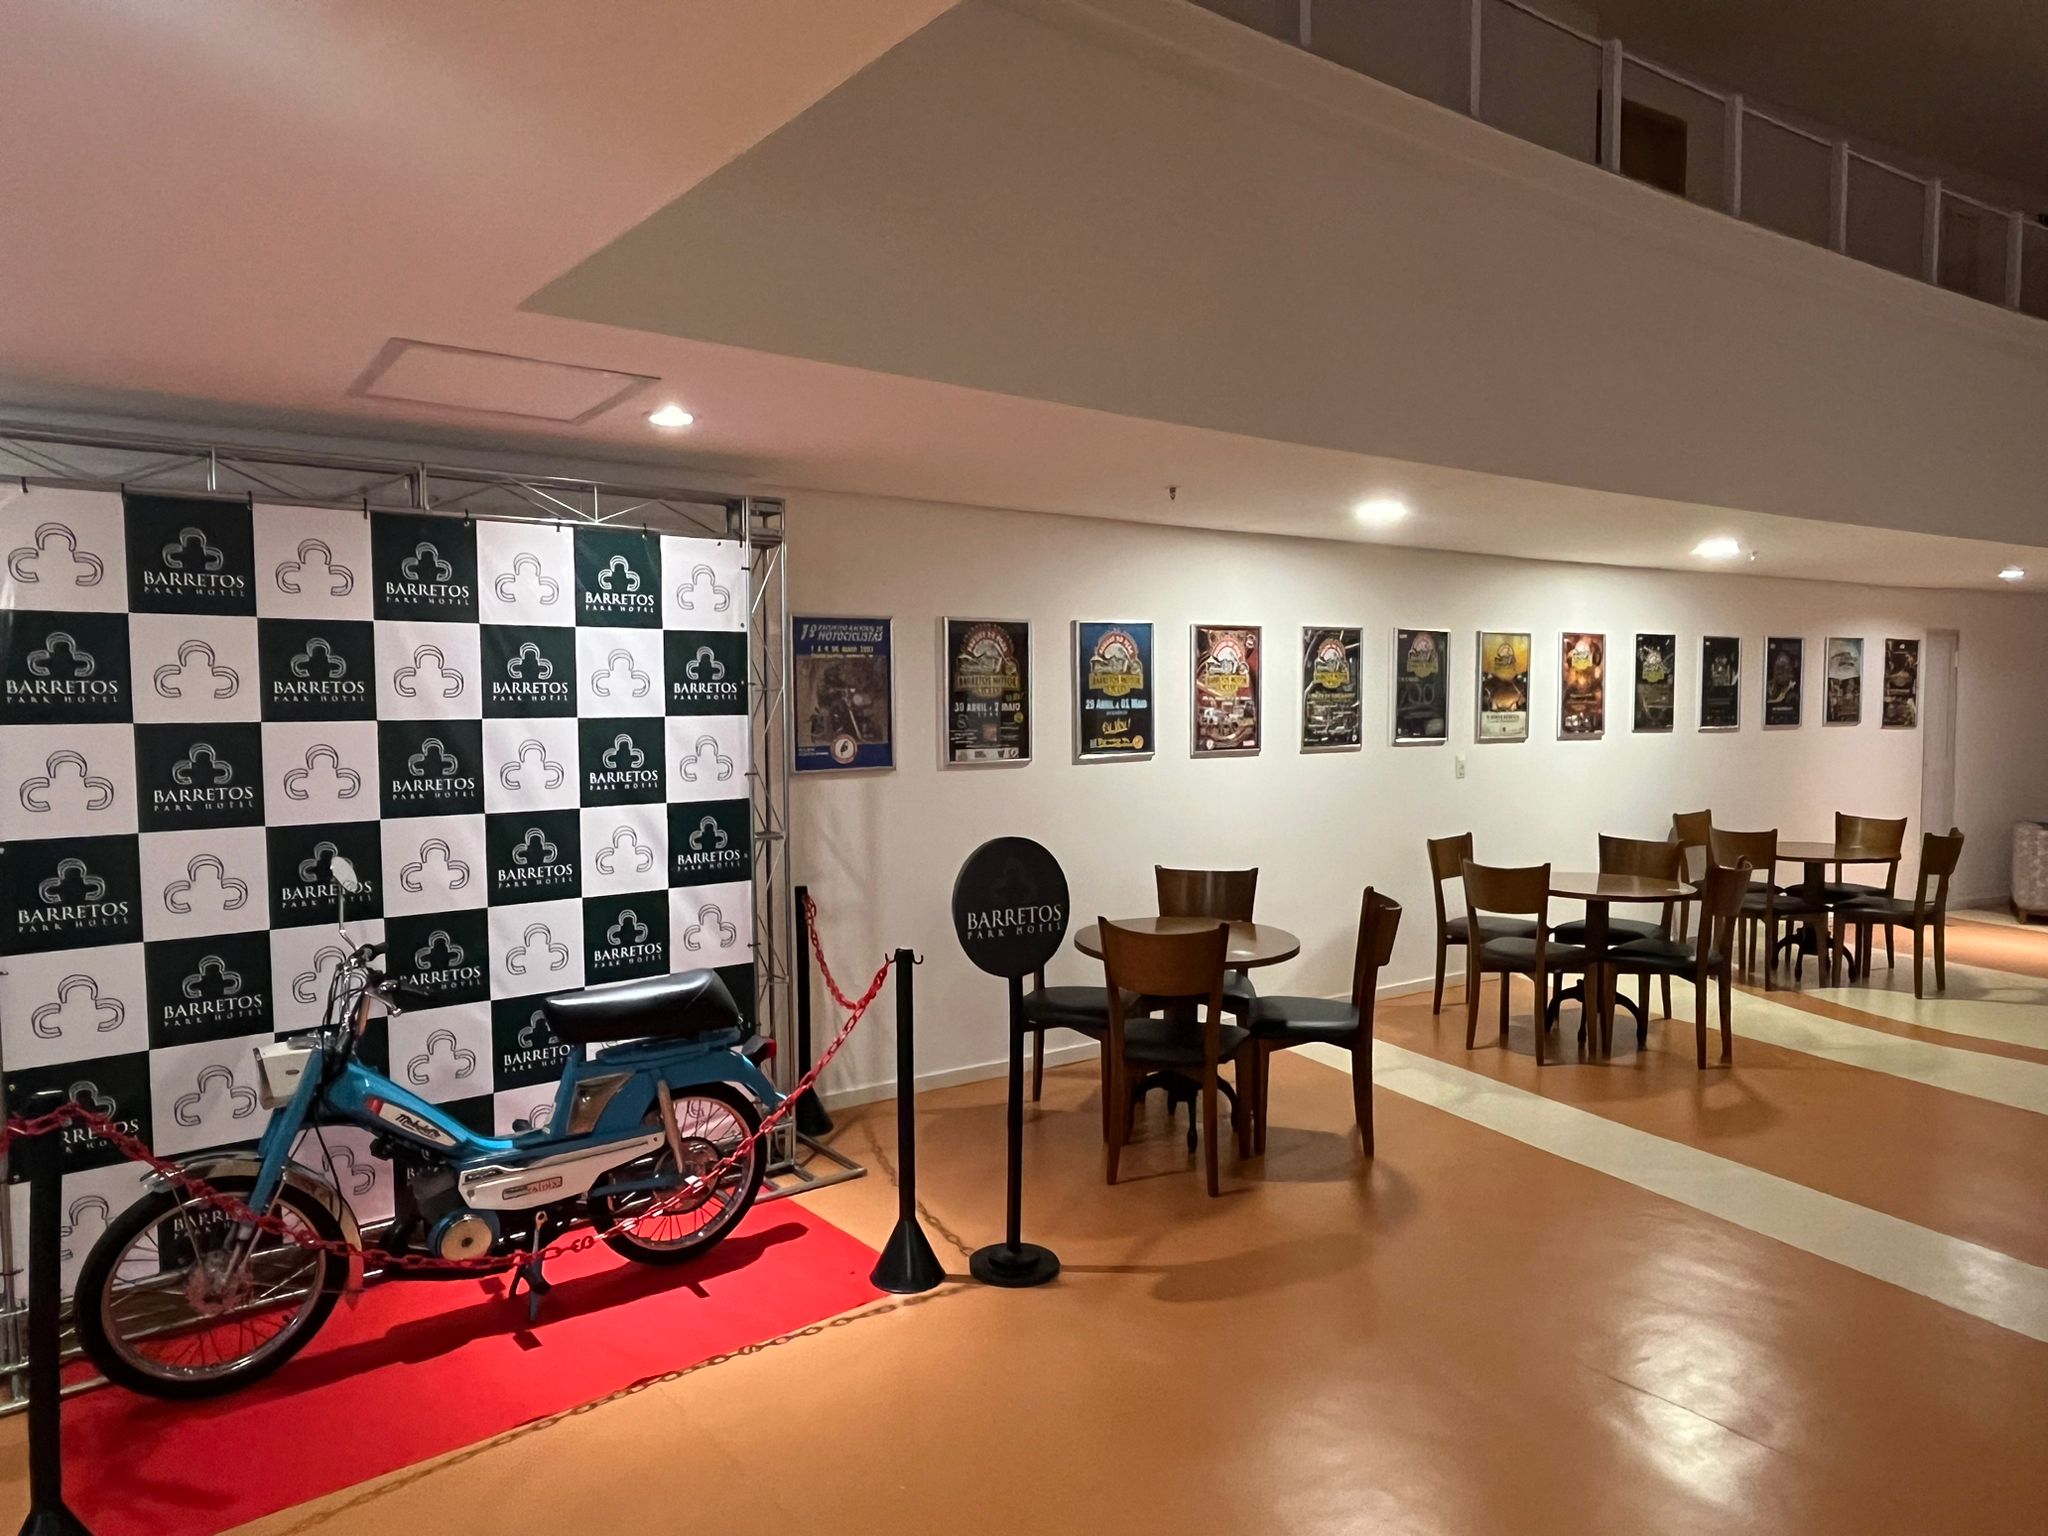 Exposição de motos antigas e mostra de cartazes alusiva ao Barretos Motorcycles têm entrada gratuita no Barretos Park Hotel